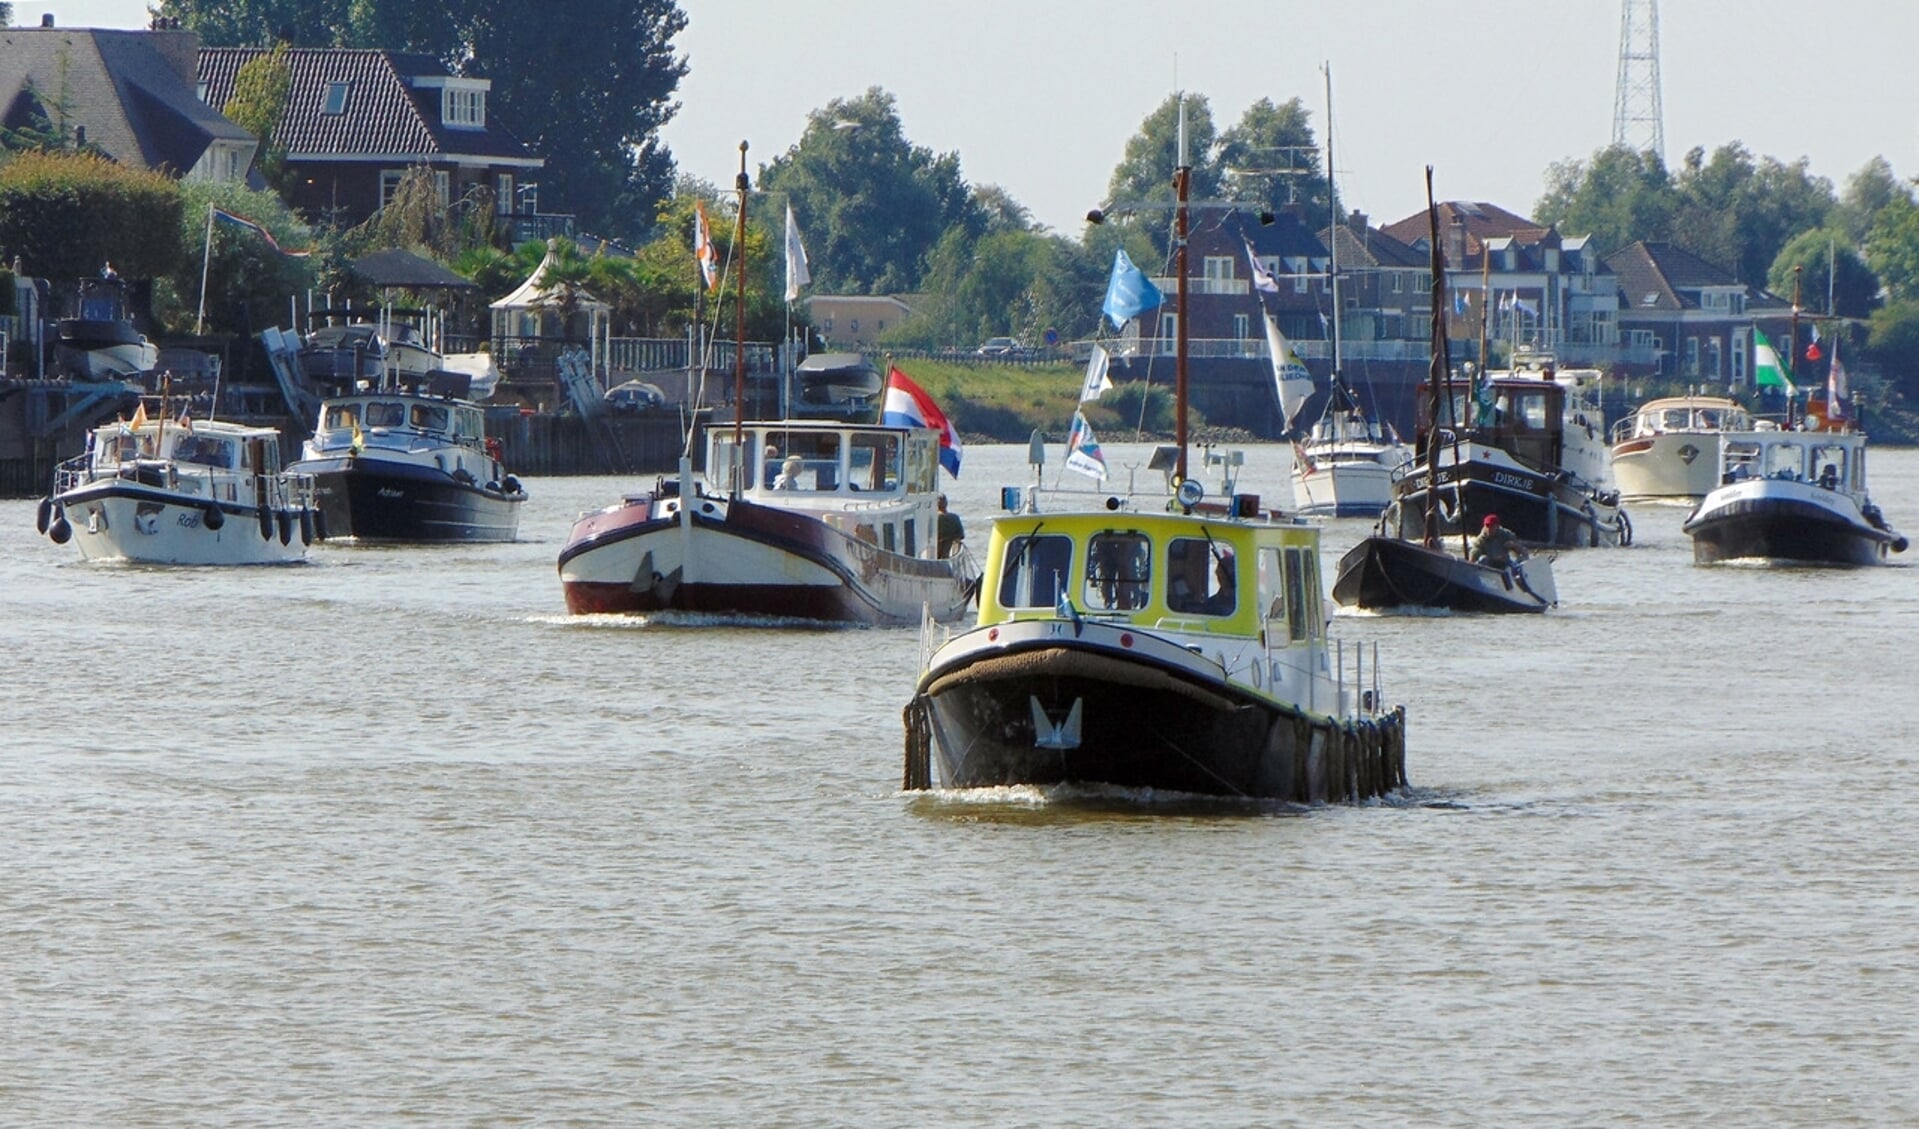 De eerste armada van de stichting Hollandsche IJssel Altijd Anders werd in augustus gehouden.